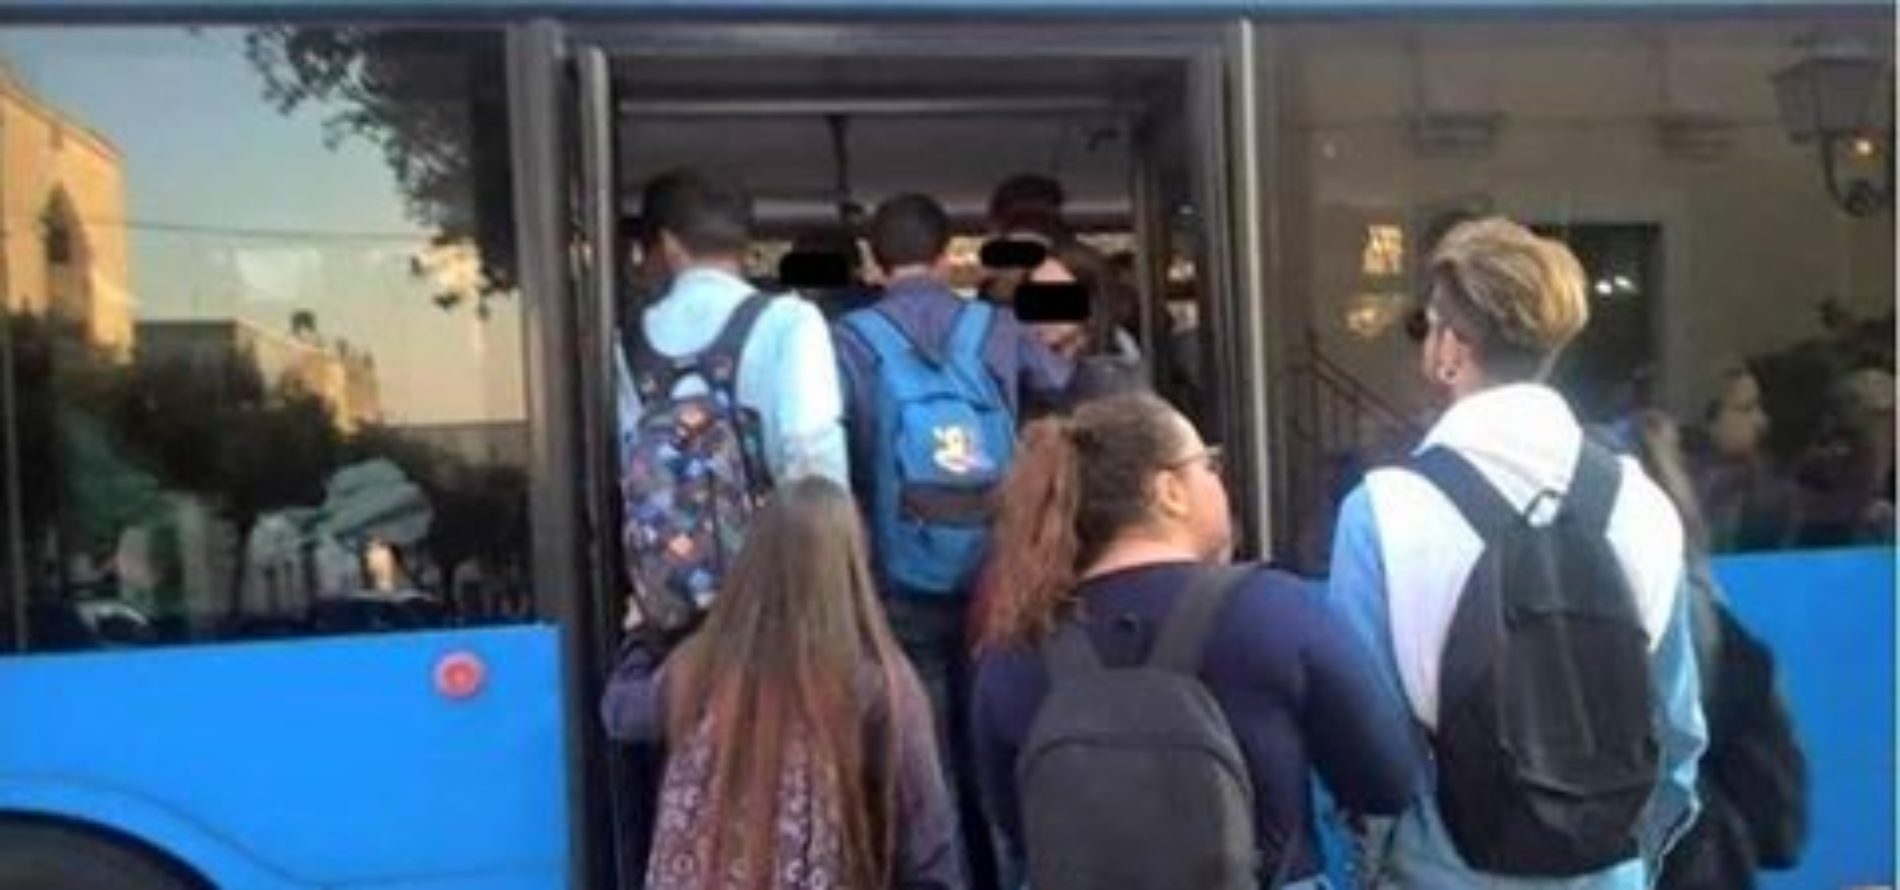 PIETRAPERZIA. Abbonamenti studenti pendolari per Caltanissetta. gratuiti dal mese di dicembre